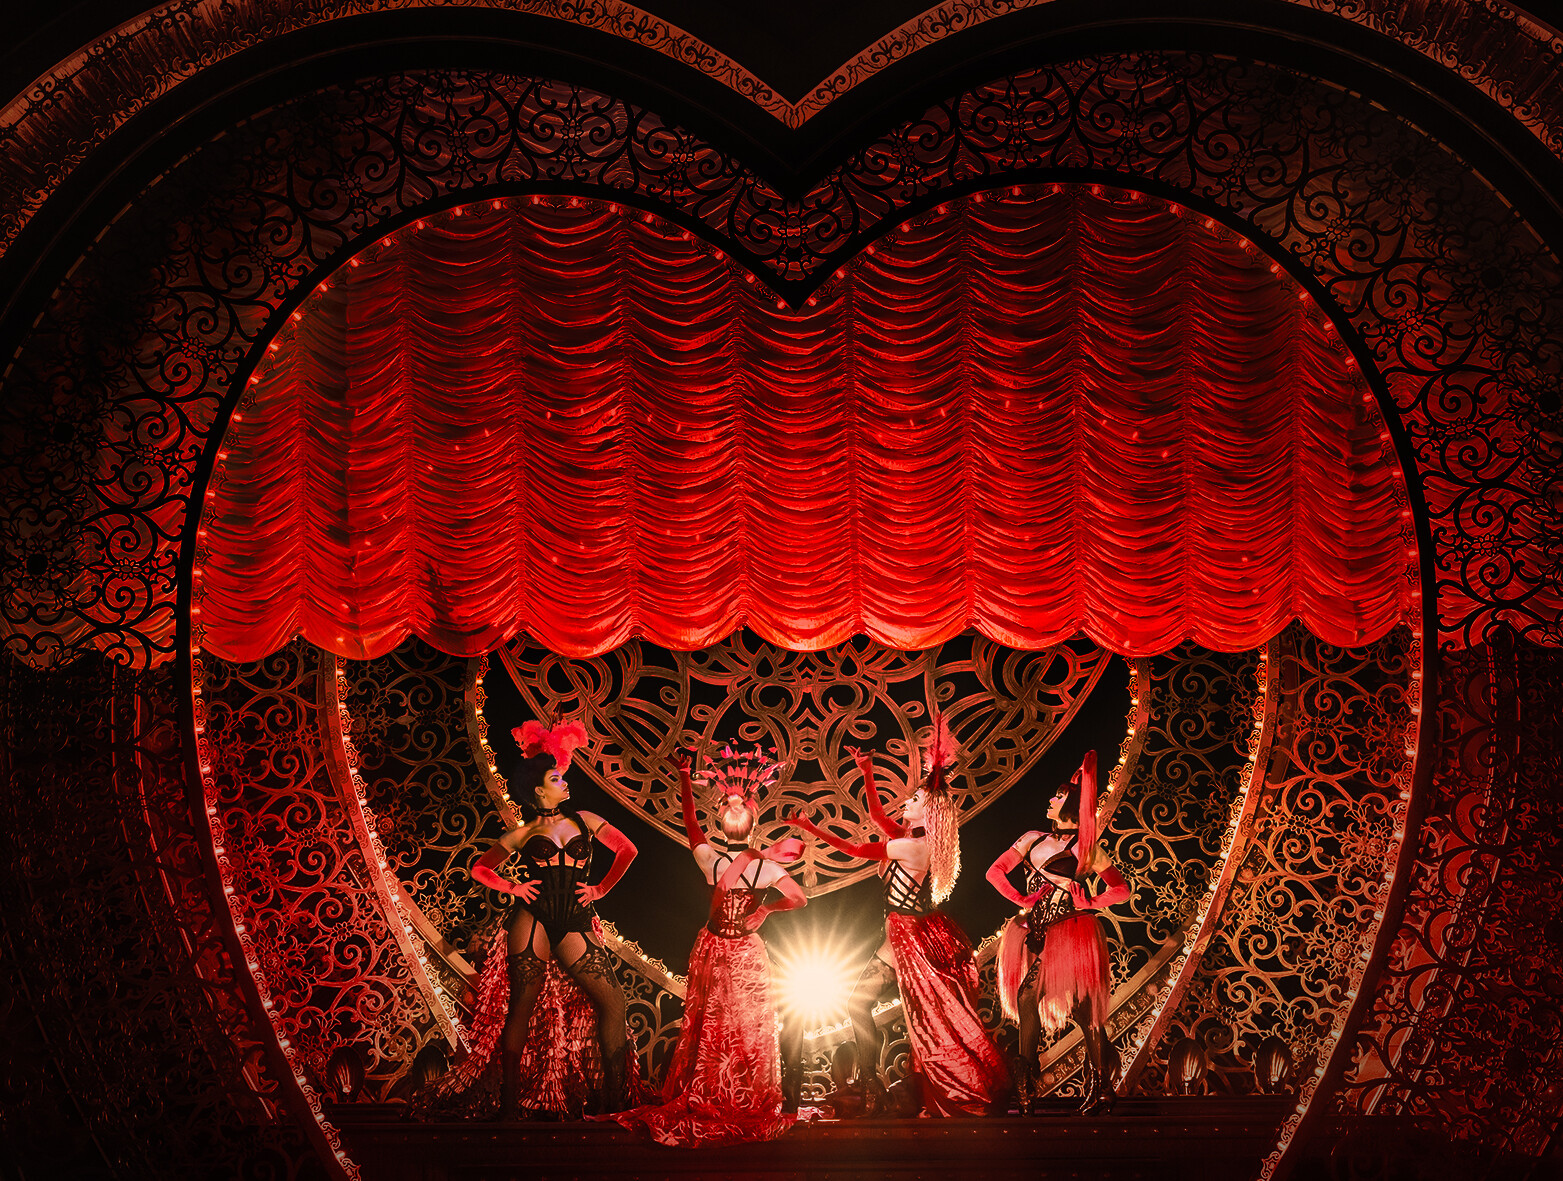 Szene aus dem Musical Moulin Rouge in Köln: Vier aufreizend angezogene Frauen stehen vor einem roten herzförmigen Vorhang.